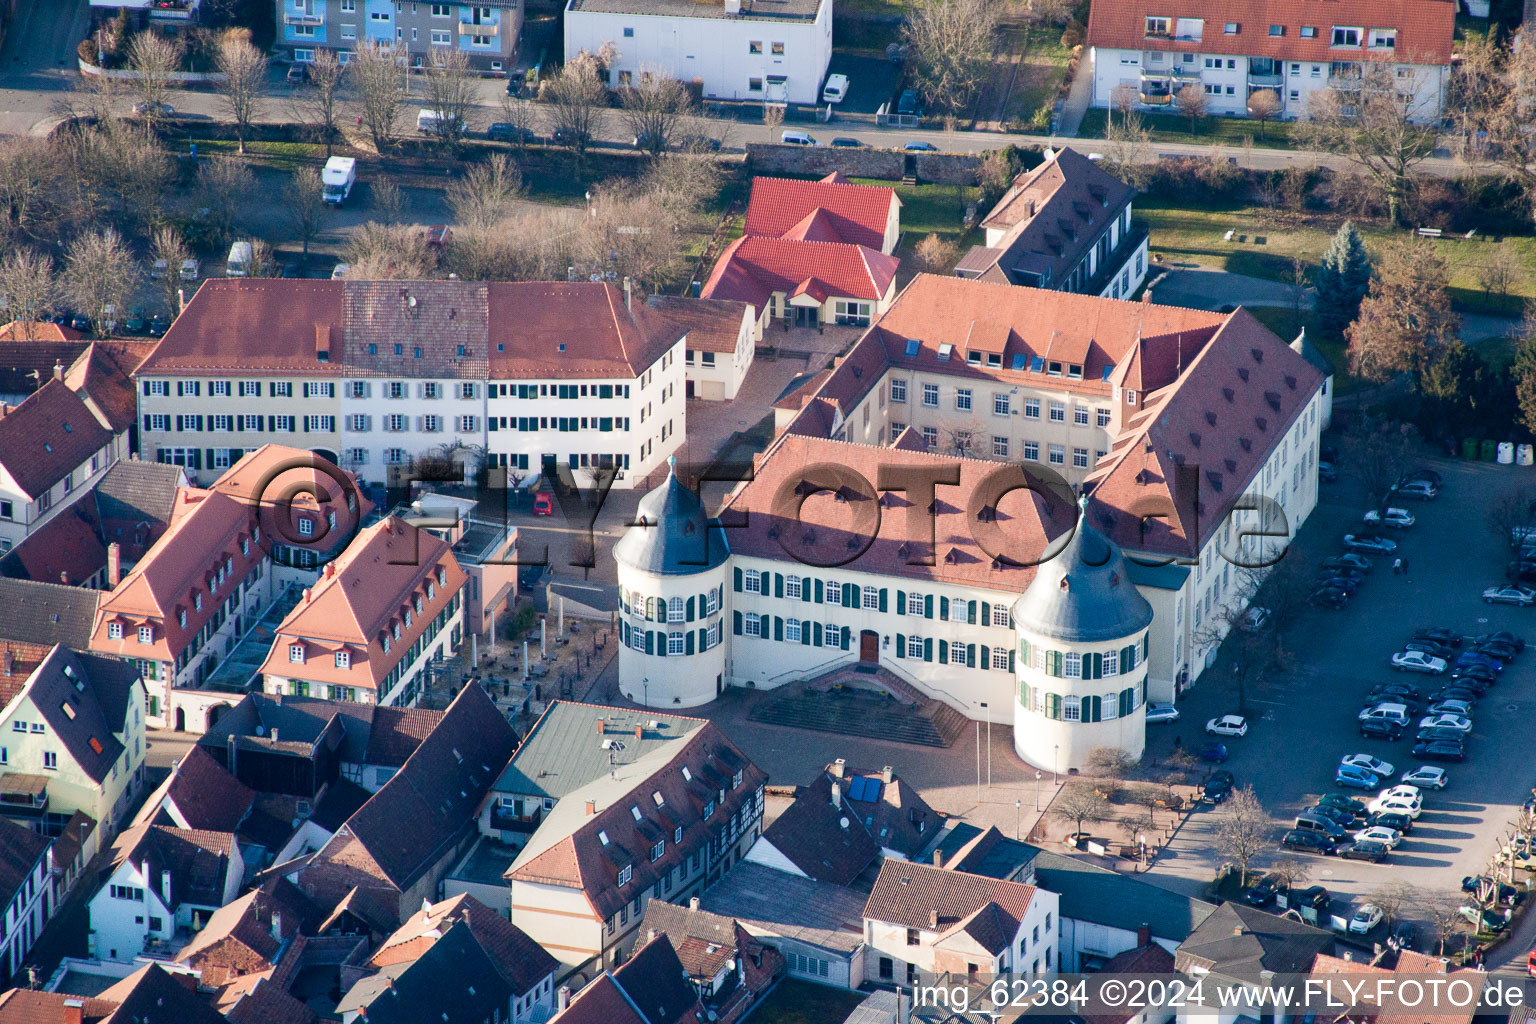 Gebäude des Rathauses der Stadtverwaltung und Verbandsgemeindeverwaltung in Bad Bergzabern im Bundesland Rheinland-Pfalz, Deutschland